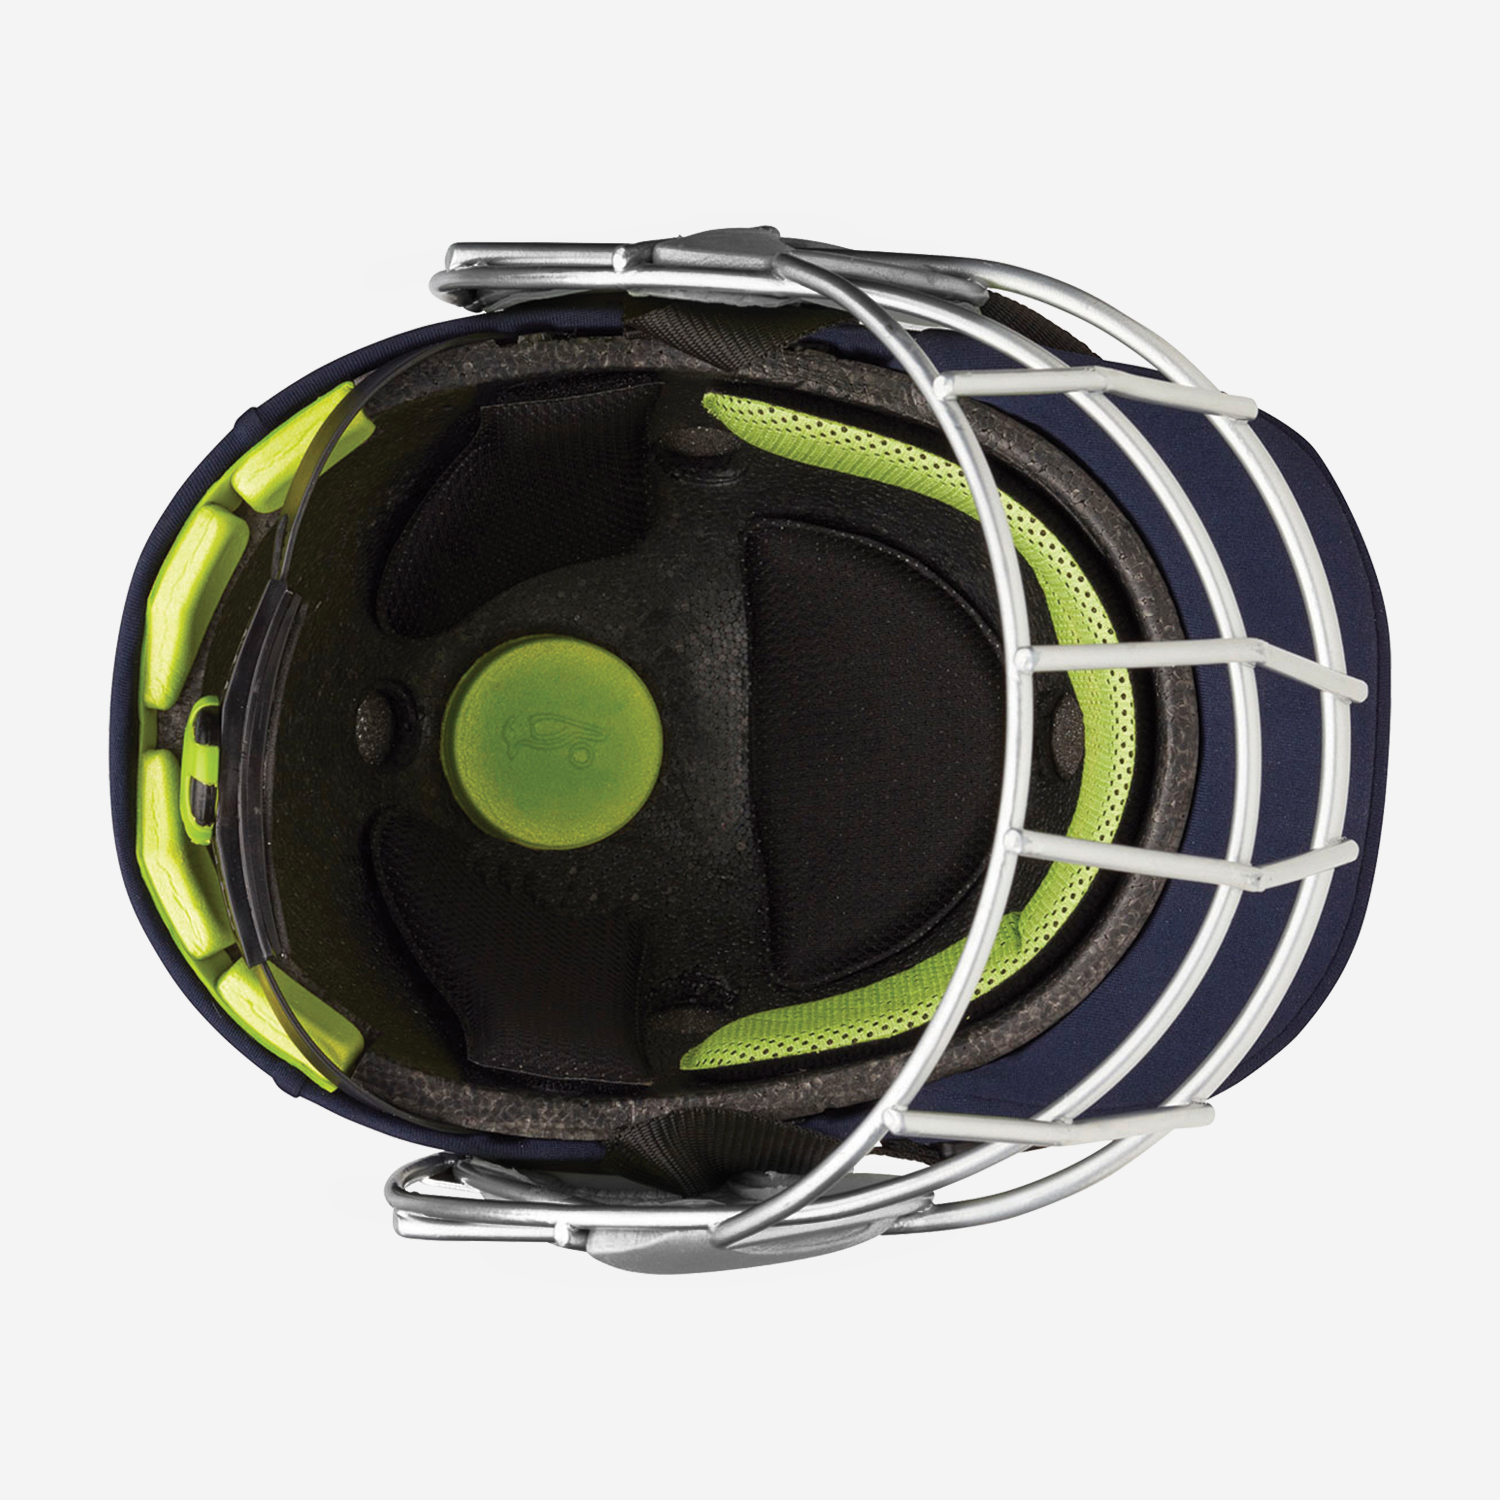 Pro 1500 Cricket Helmet